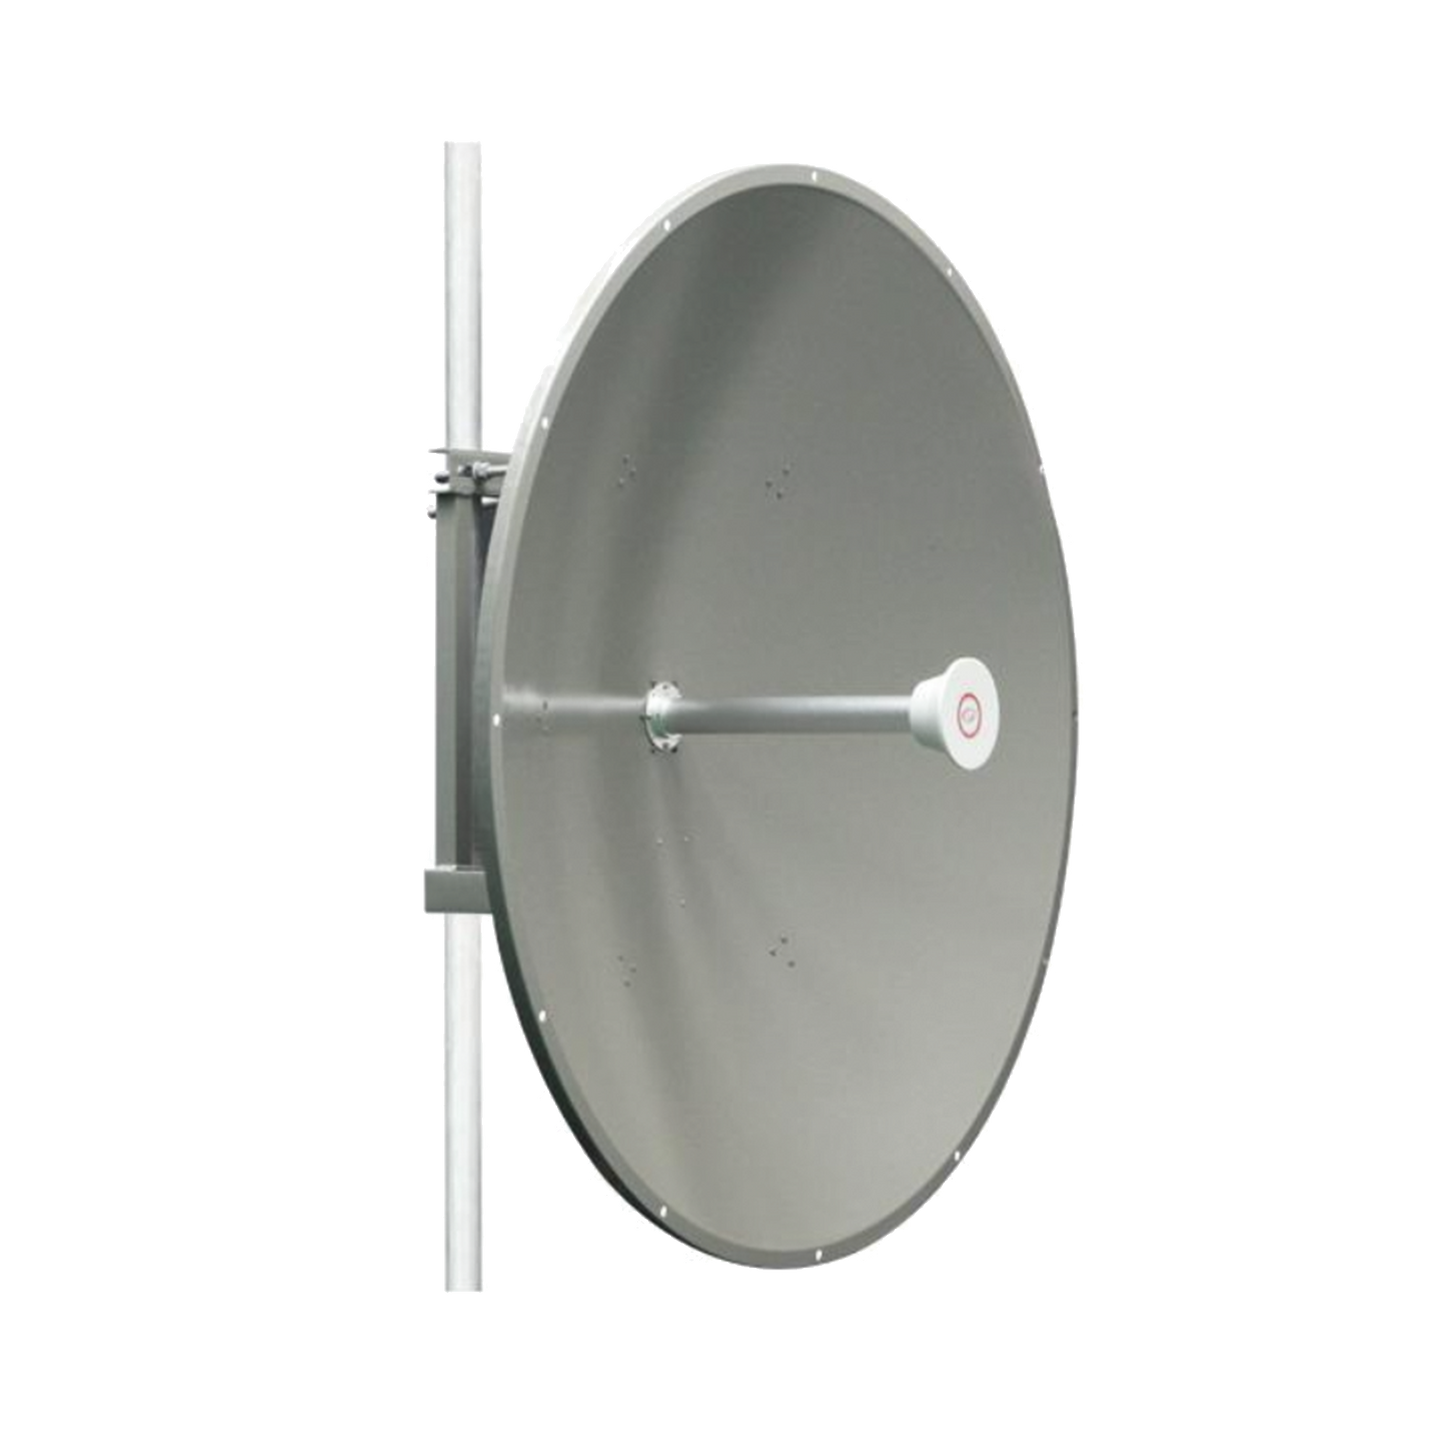 Antena direccional de 4 ft, 5.1 a 7.1 GHz, Ganancia 36 dBi, Conectores RP-SMA Hembra, Polarización doble, incluye montaje para torre o mástil